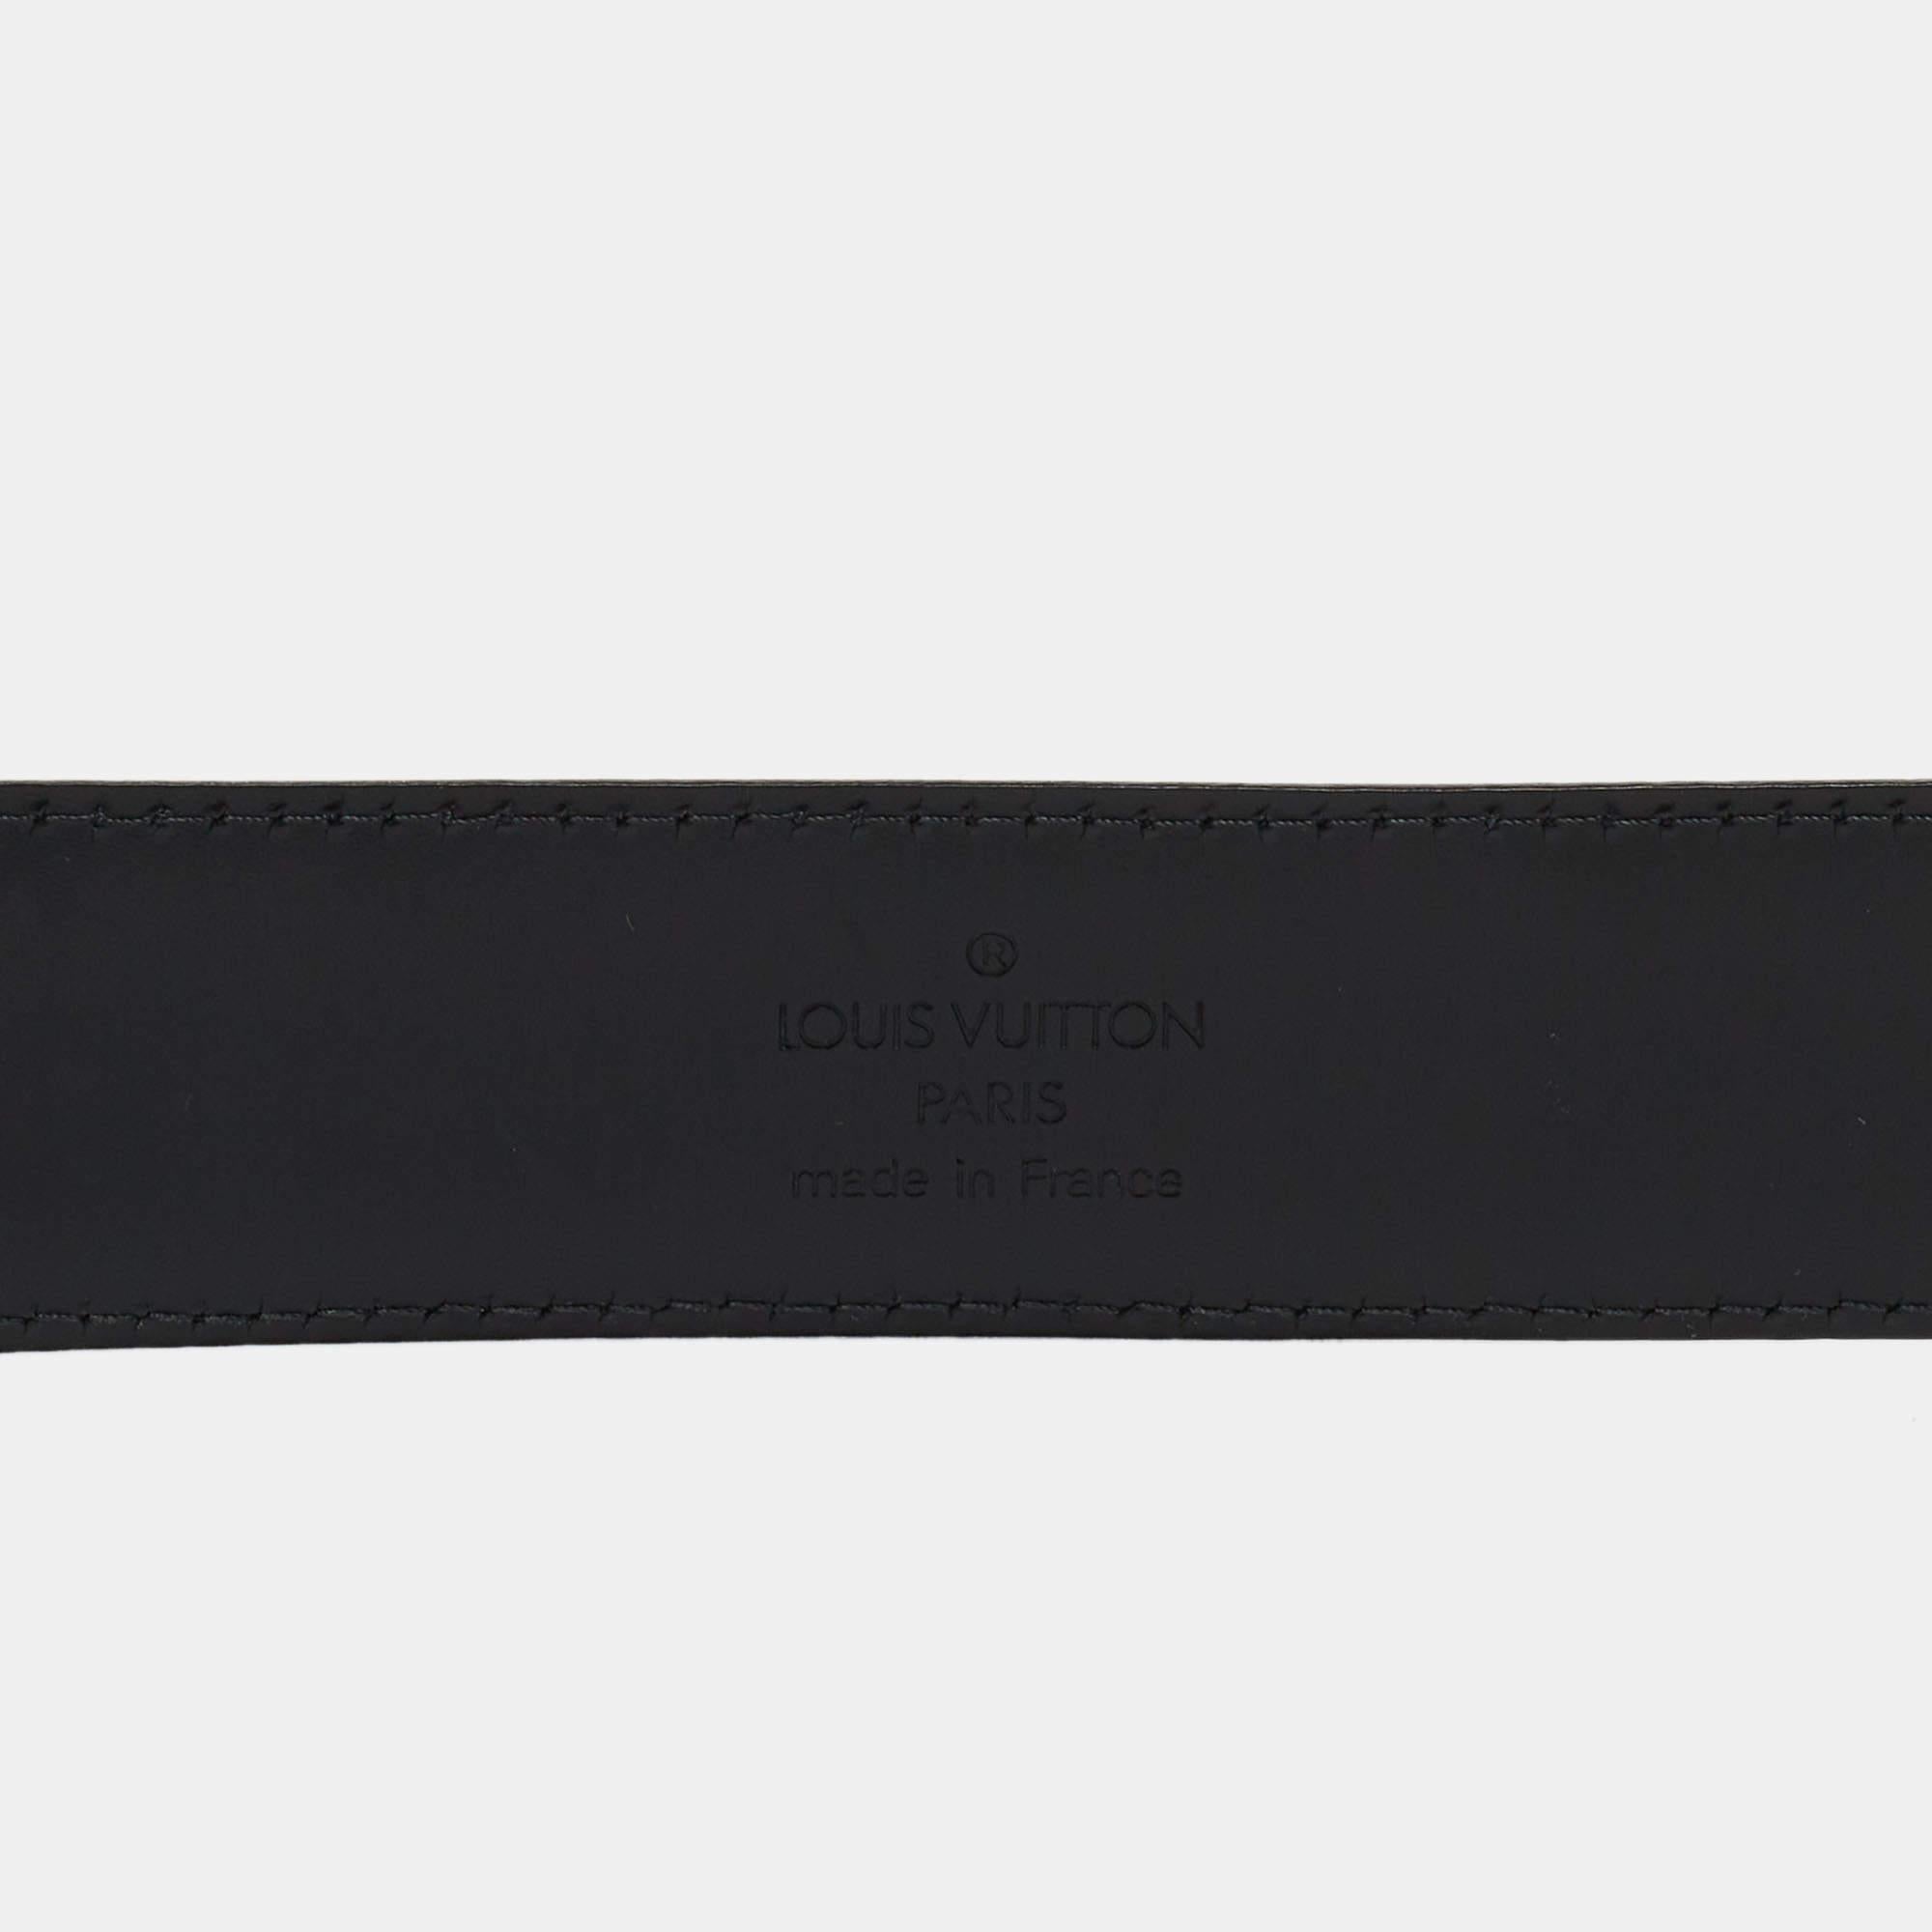 Mit einer Dornschließe und einer Schlaufe aus silberfarbenem Metall, die einen Kontrast zum schwarzen Taigalederband bilden, passt der Gürtel von Louis Vuitton zu all Ihren raffinierten Looks. Dieser strapazierfähige und attraktive Gürtel ist ein